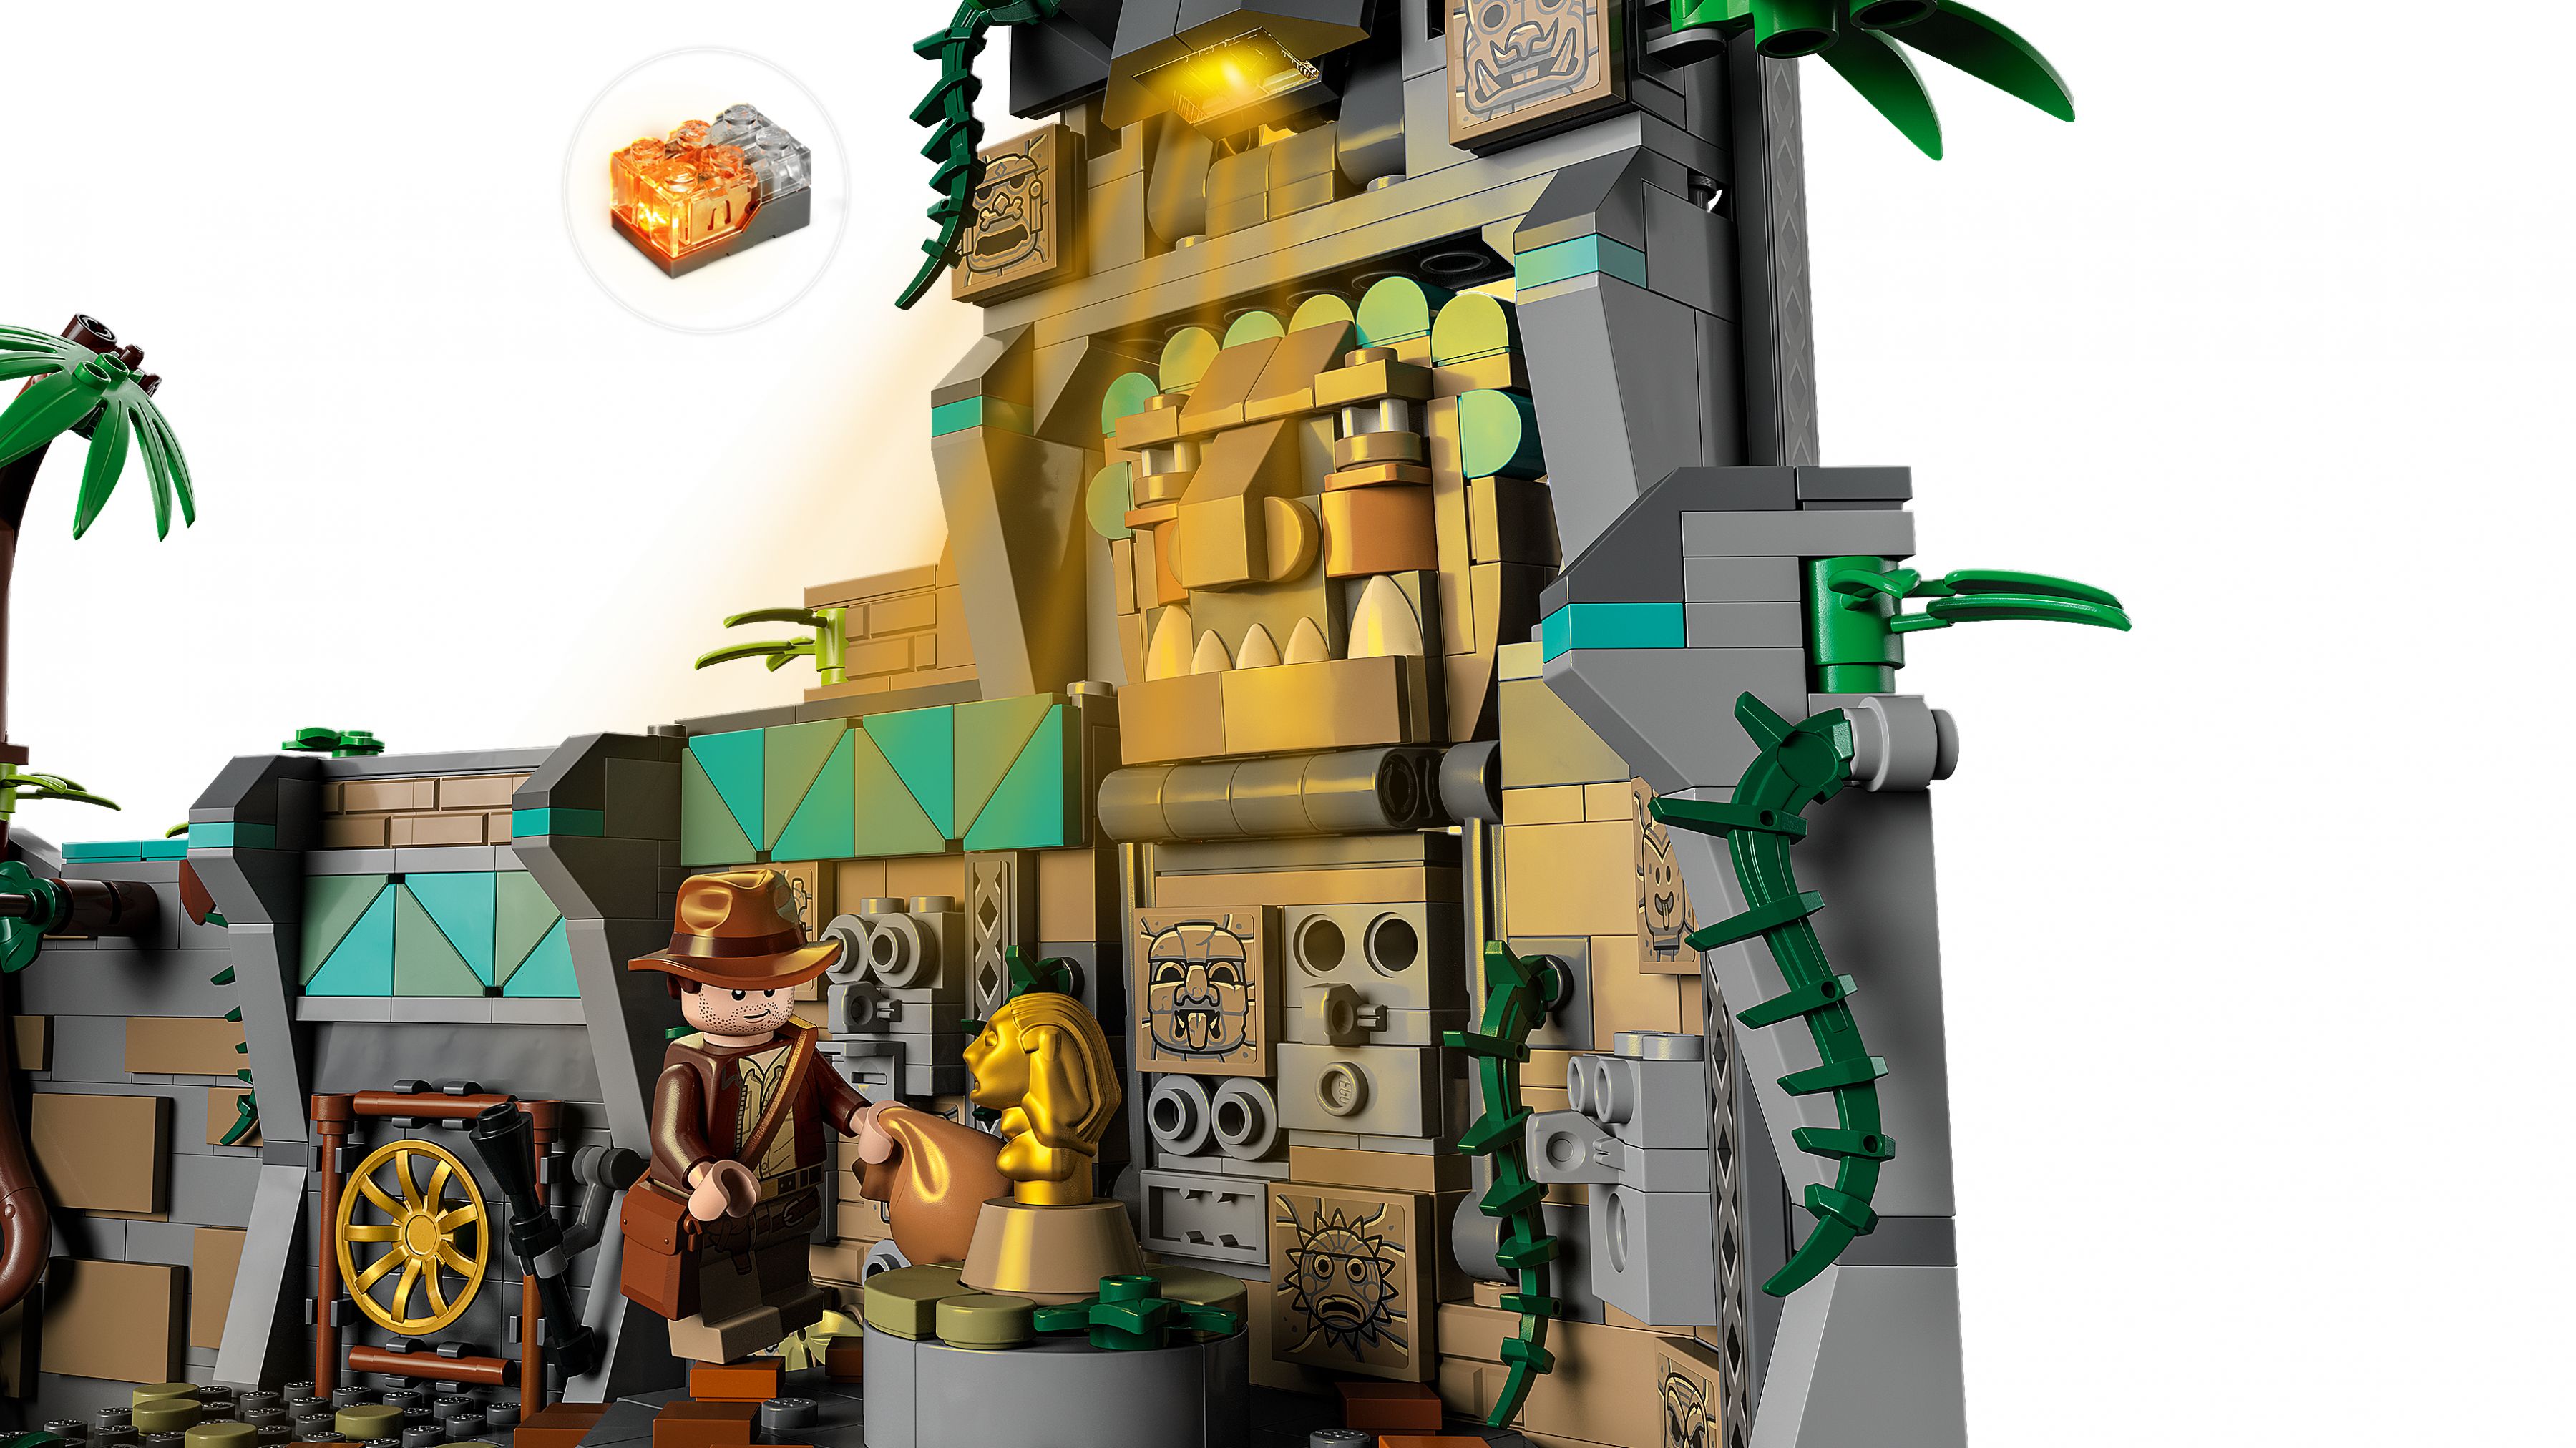 LEGO Indiana Jones 77015 Tempel des goldenen Götzen LEGO_77015_WEB_SEC02_NOBG.jpg